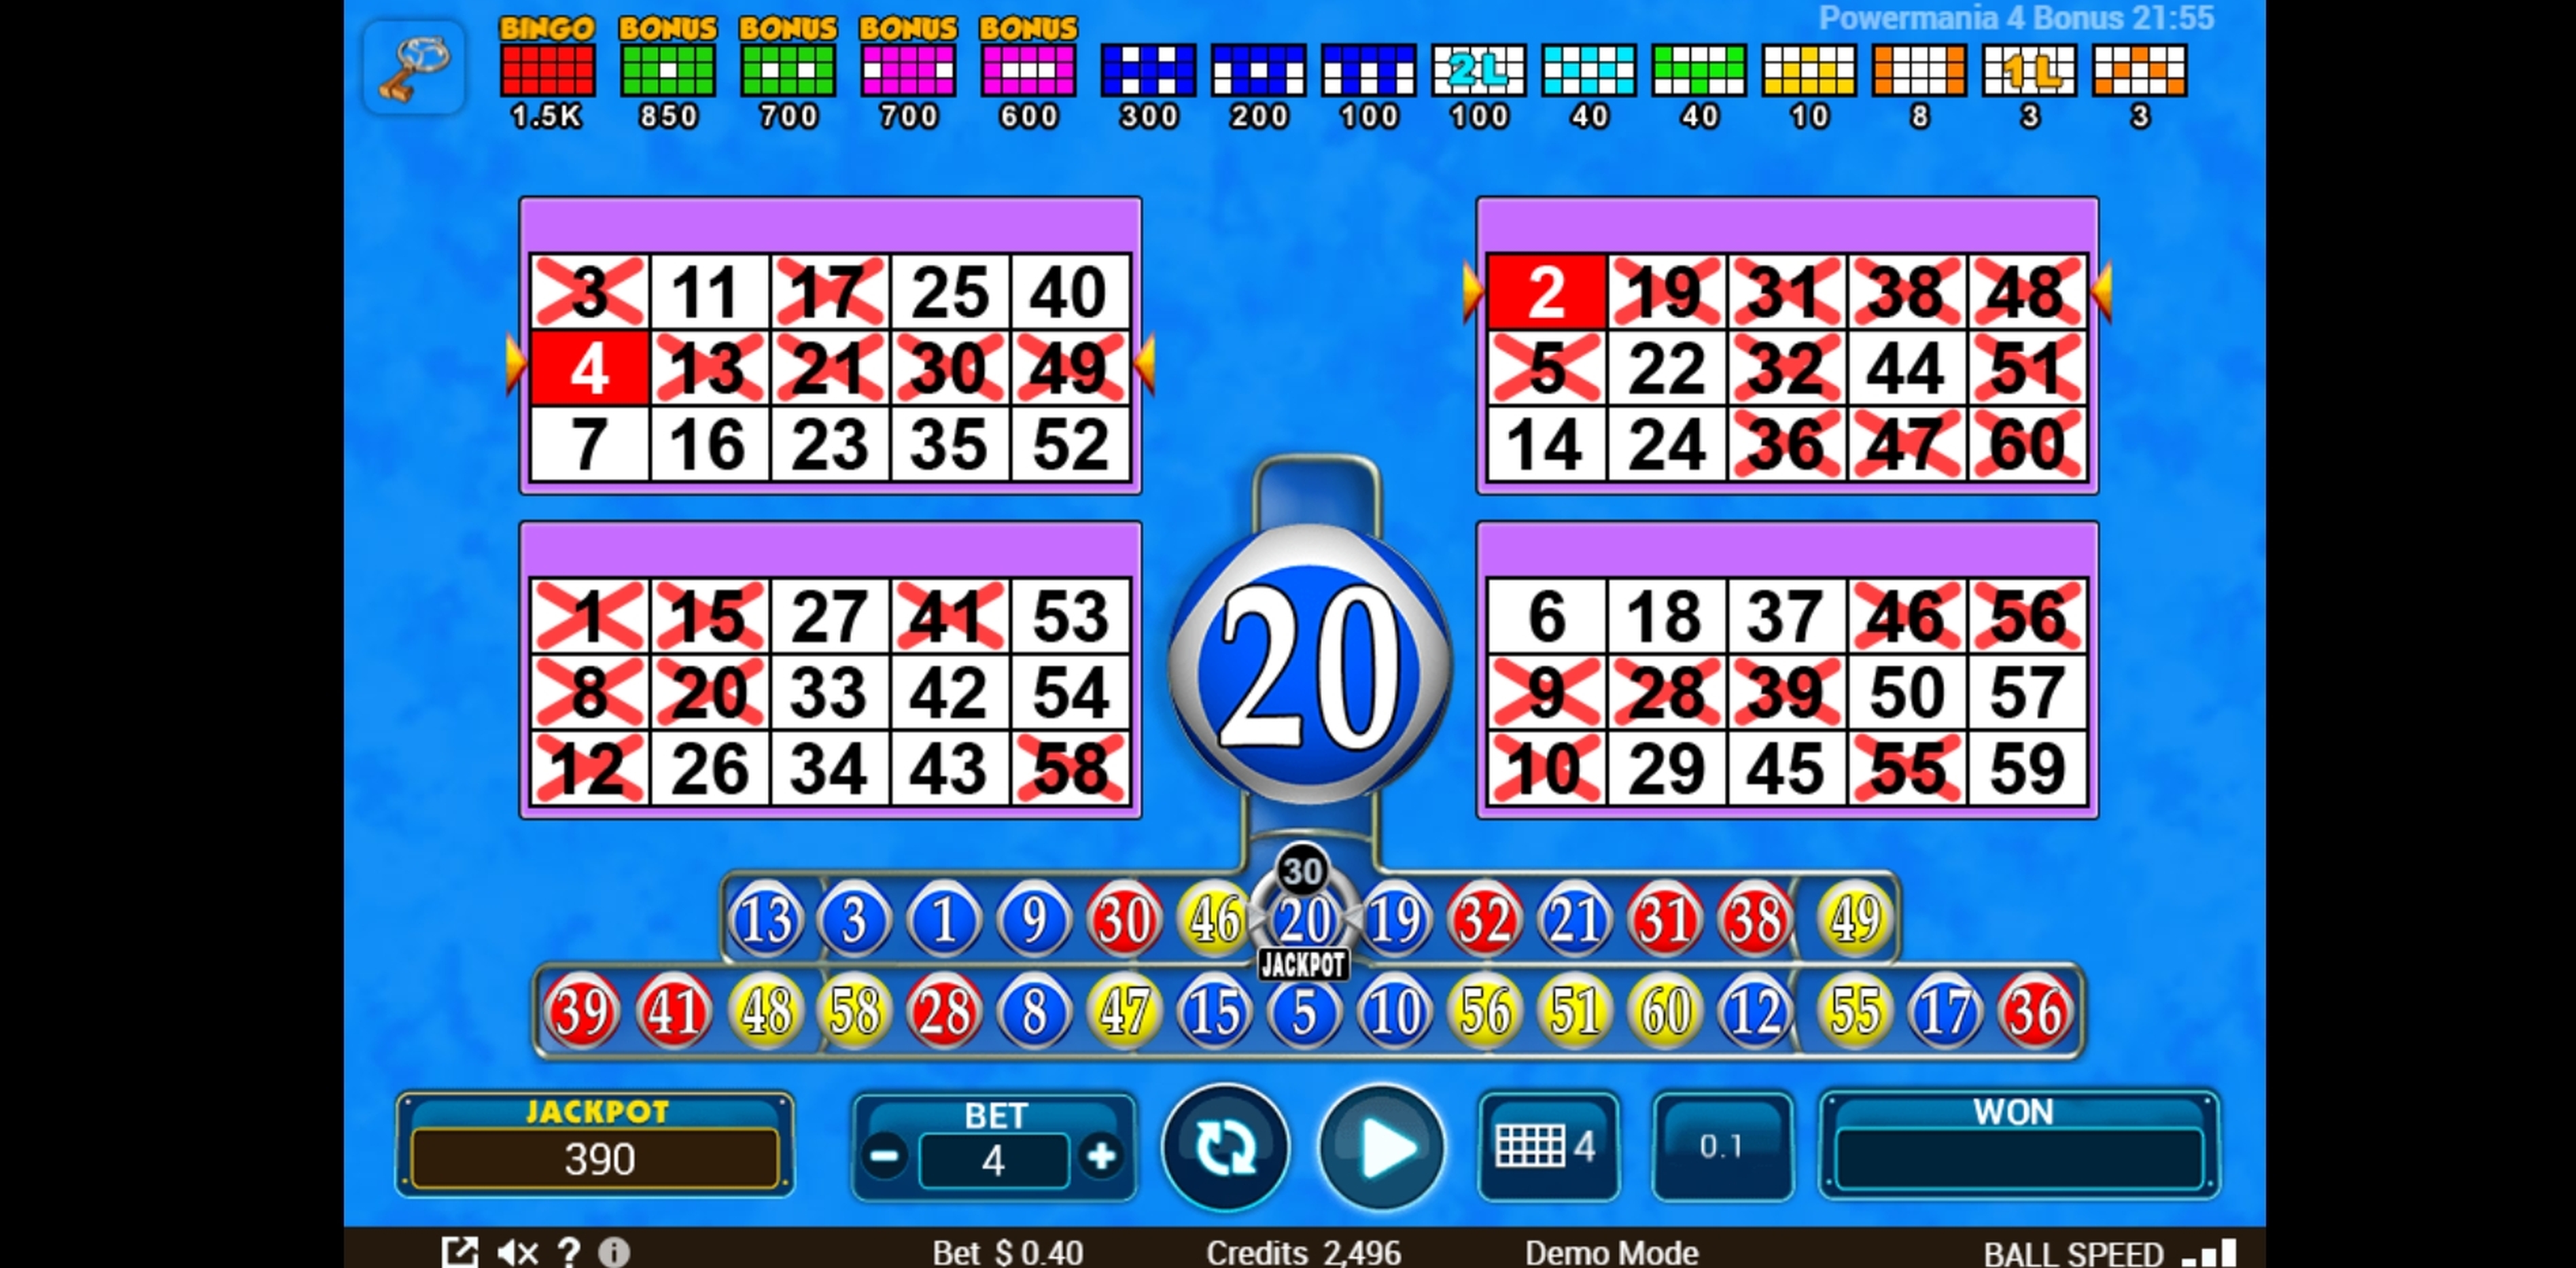 Win Money in Power 4 Bonus Free Slot Game by Zitro